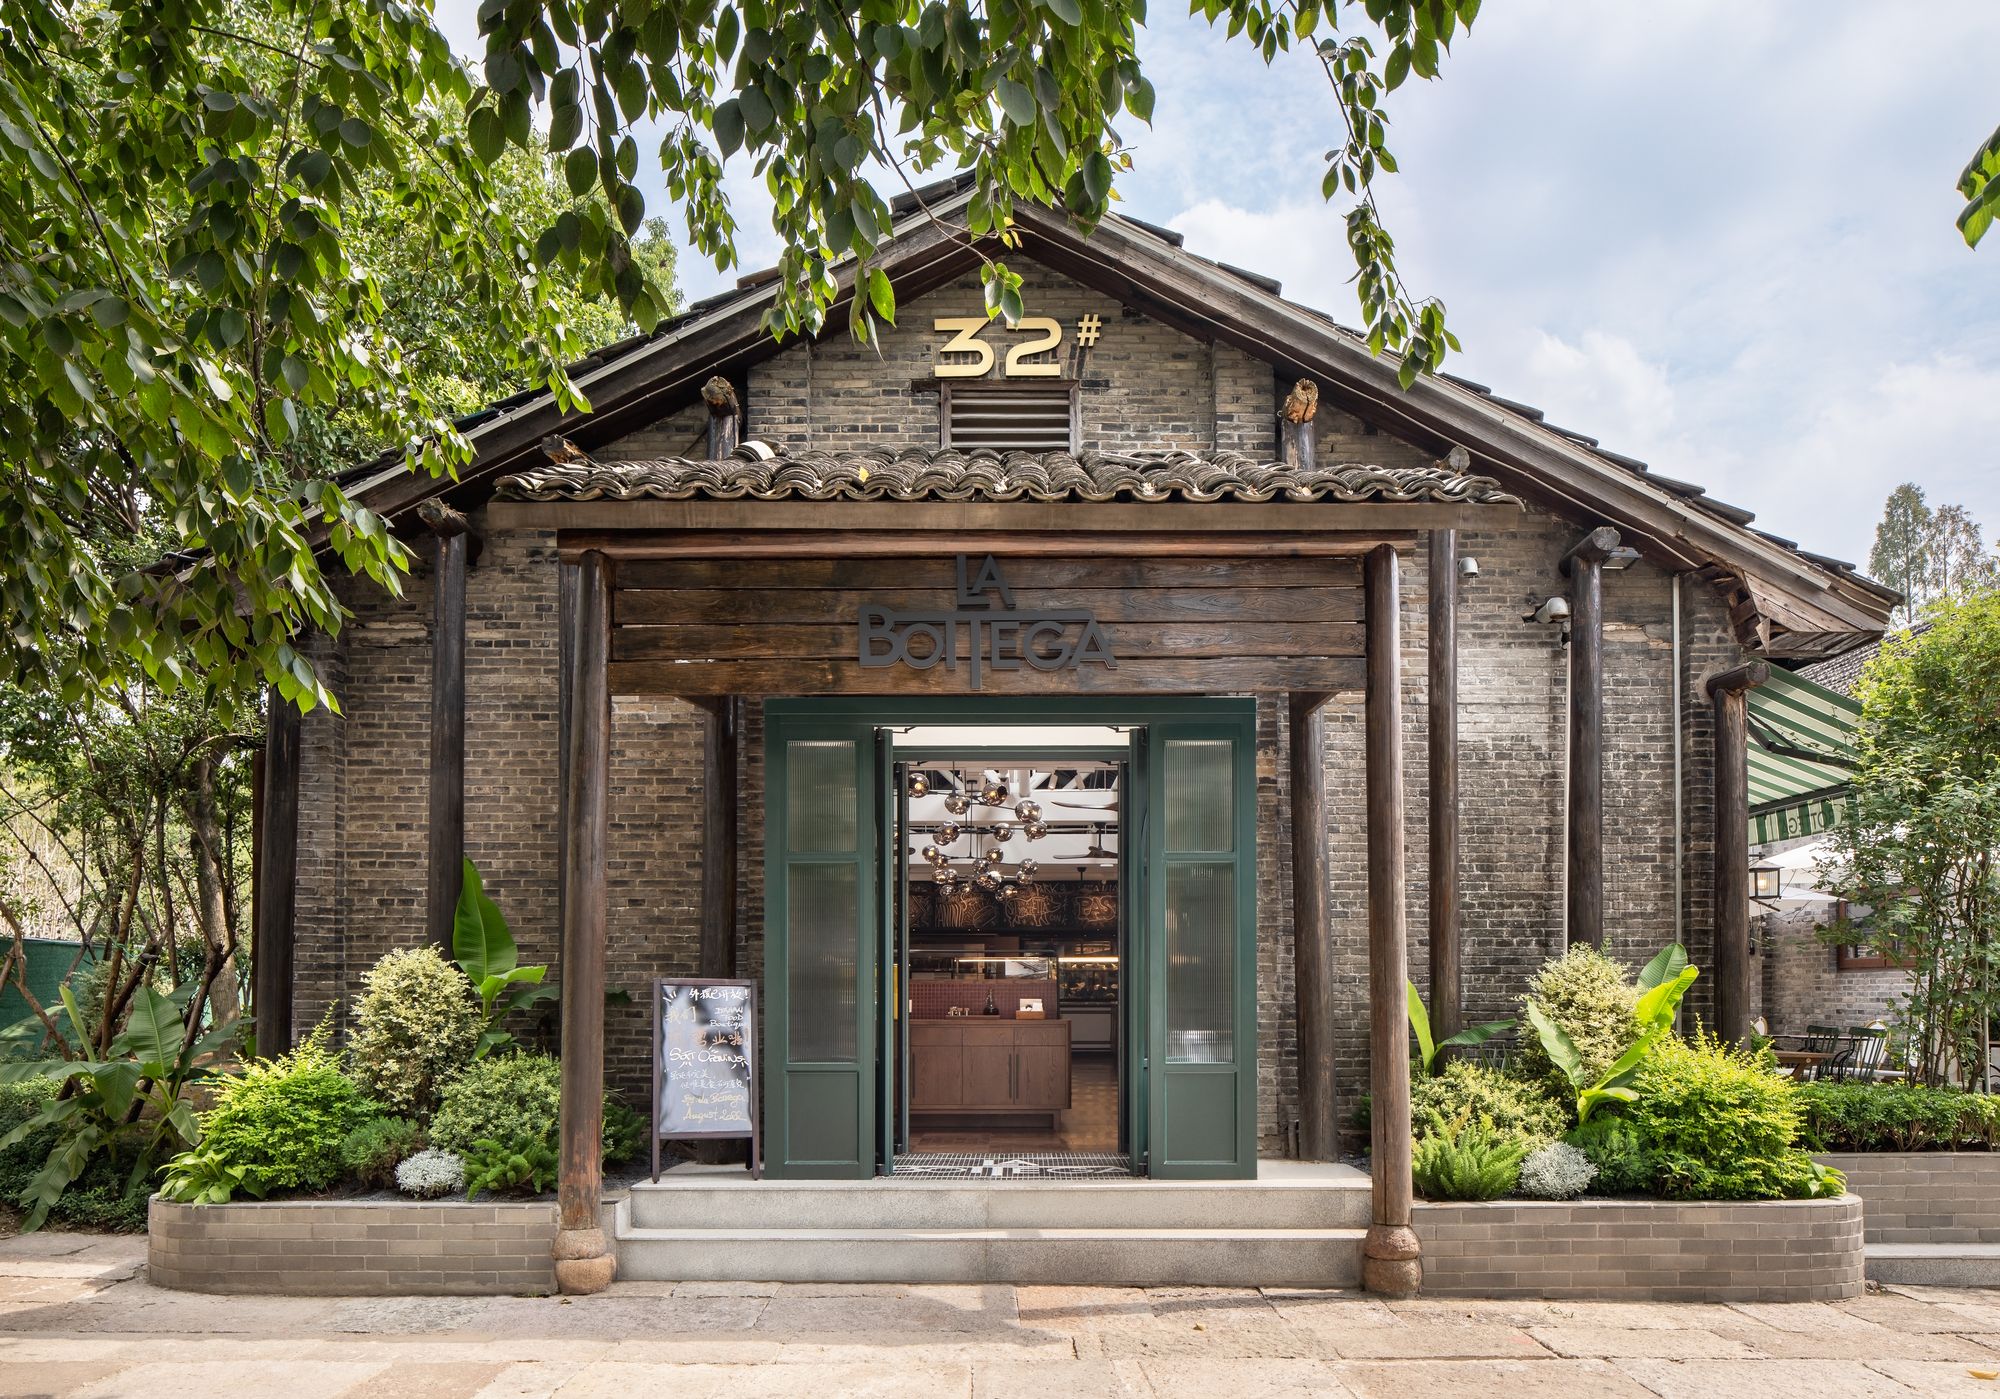 La Bottega餐厅；酒吧|ART-Arrakis | 建筑室内设计的创新与灵感